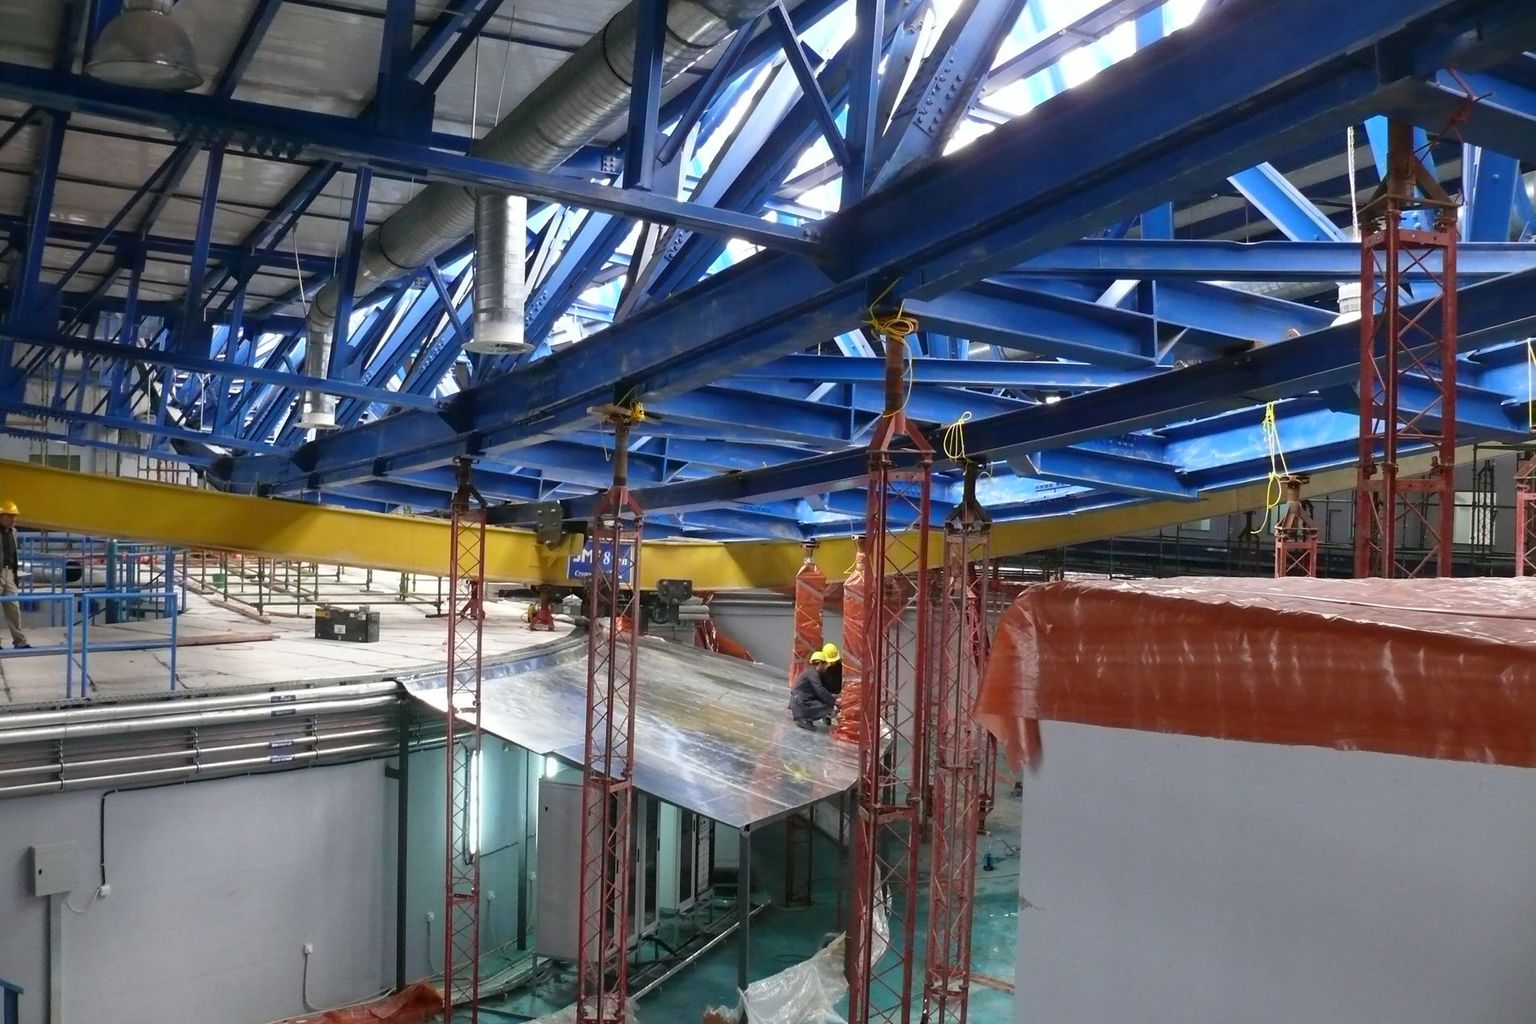 Glück im Unglück: Im Jahr 2014 war das Dach der SESAME-Halle unter der Last von Schnee eingestürzt – weder Personen noch das Synchrotron nahmen Schaden.